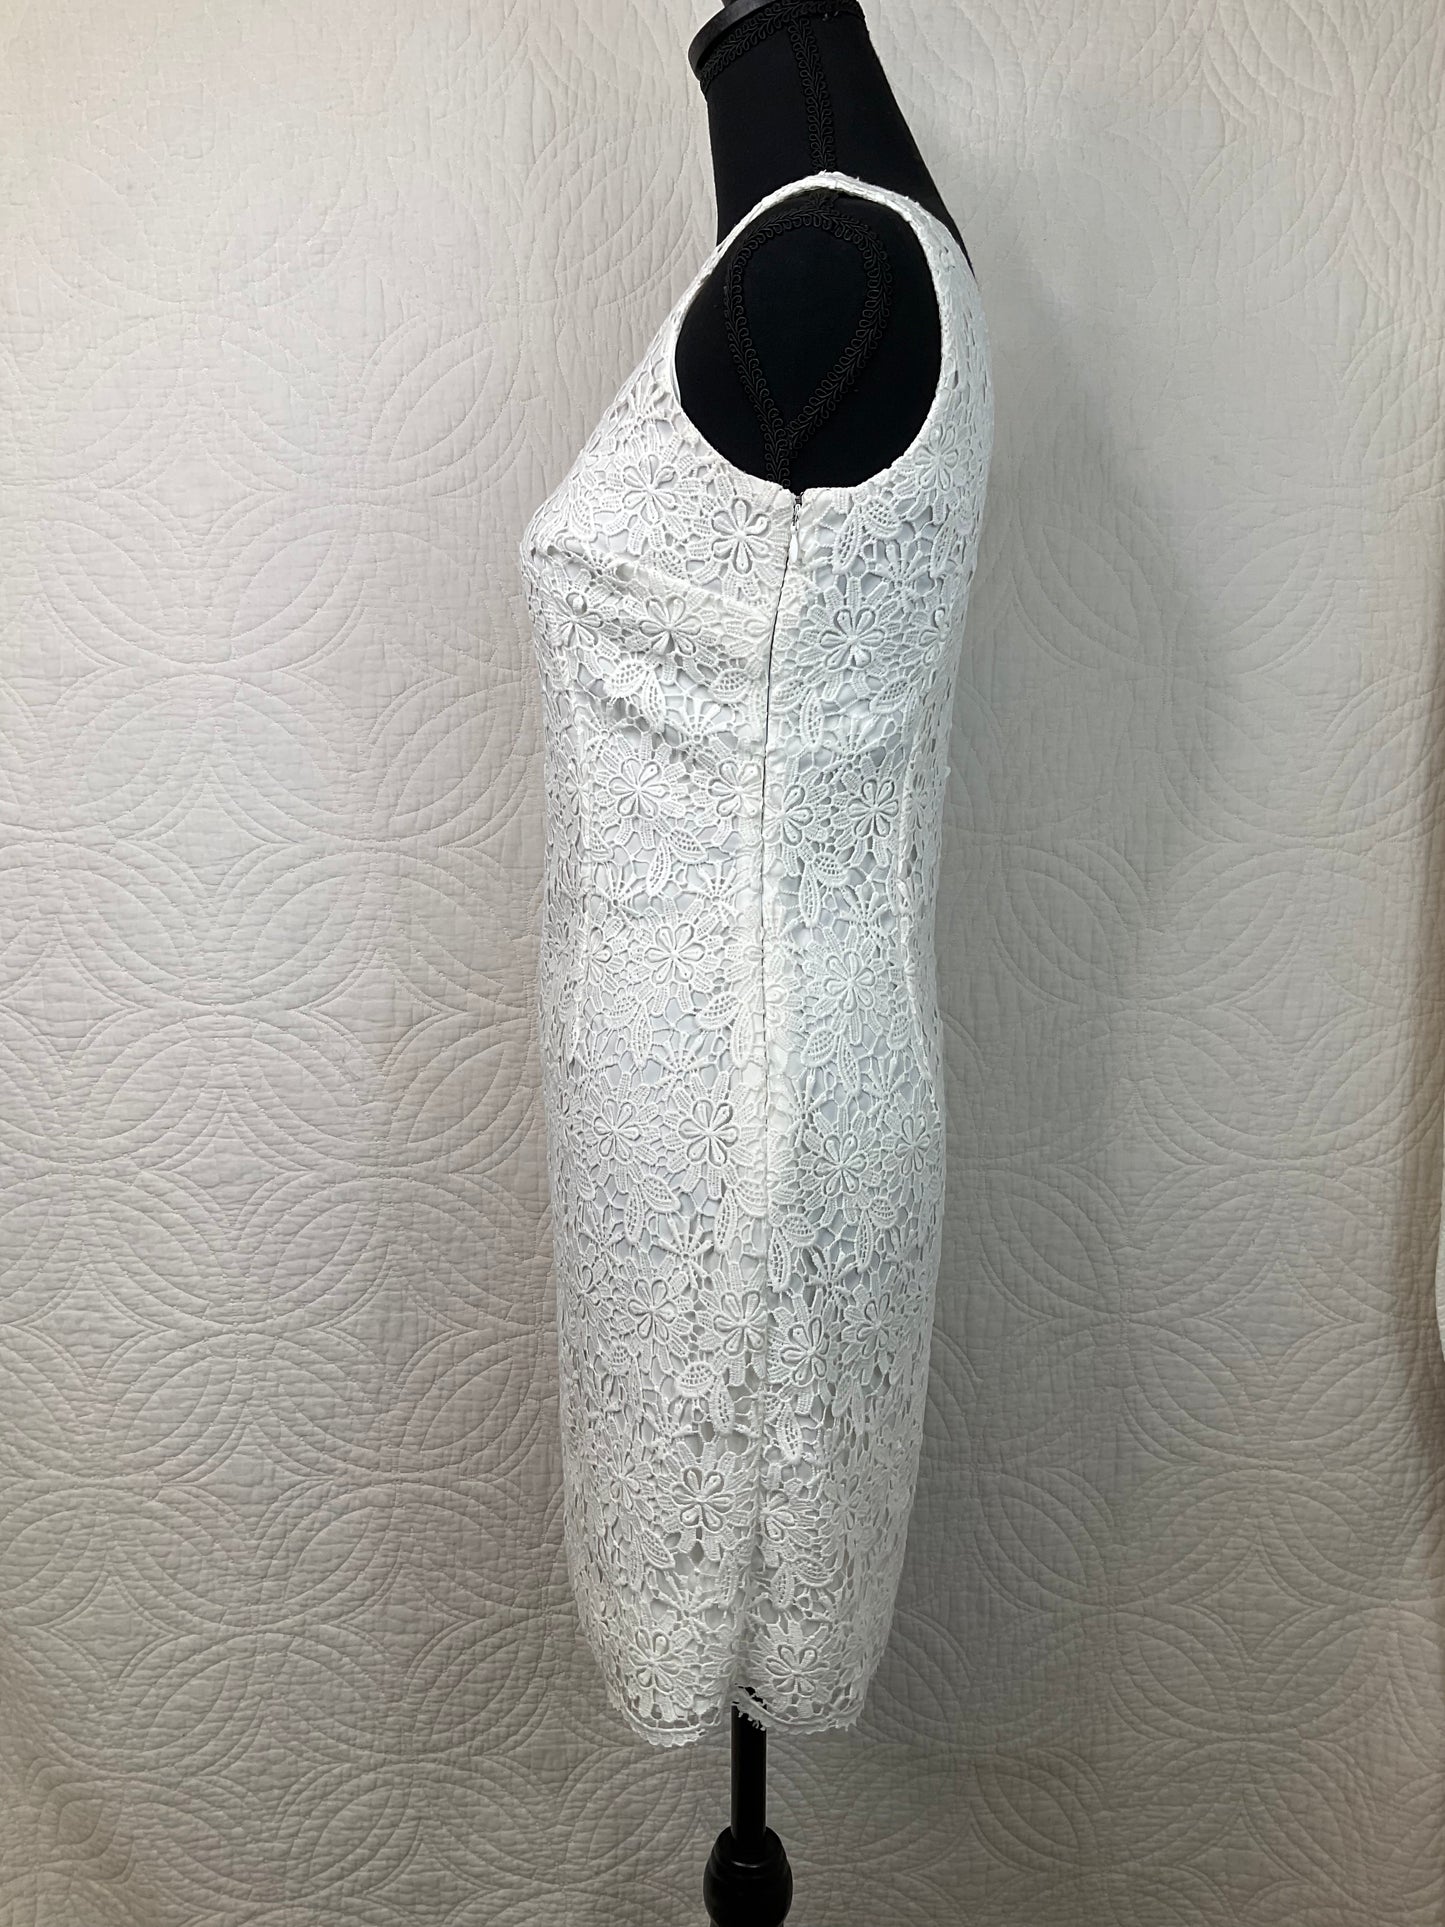 Ann Taylor Petite Lace Dress, Size 0P